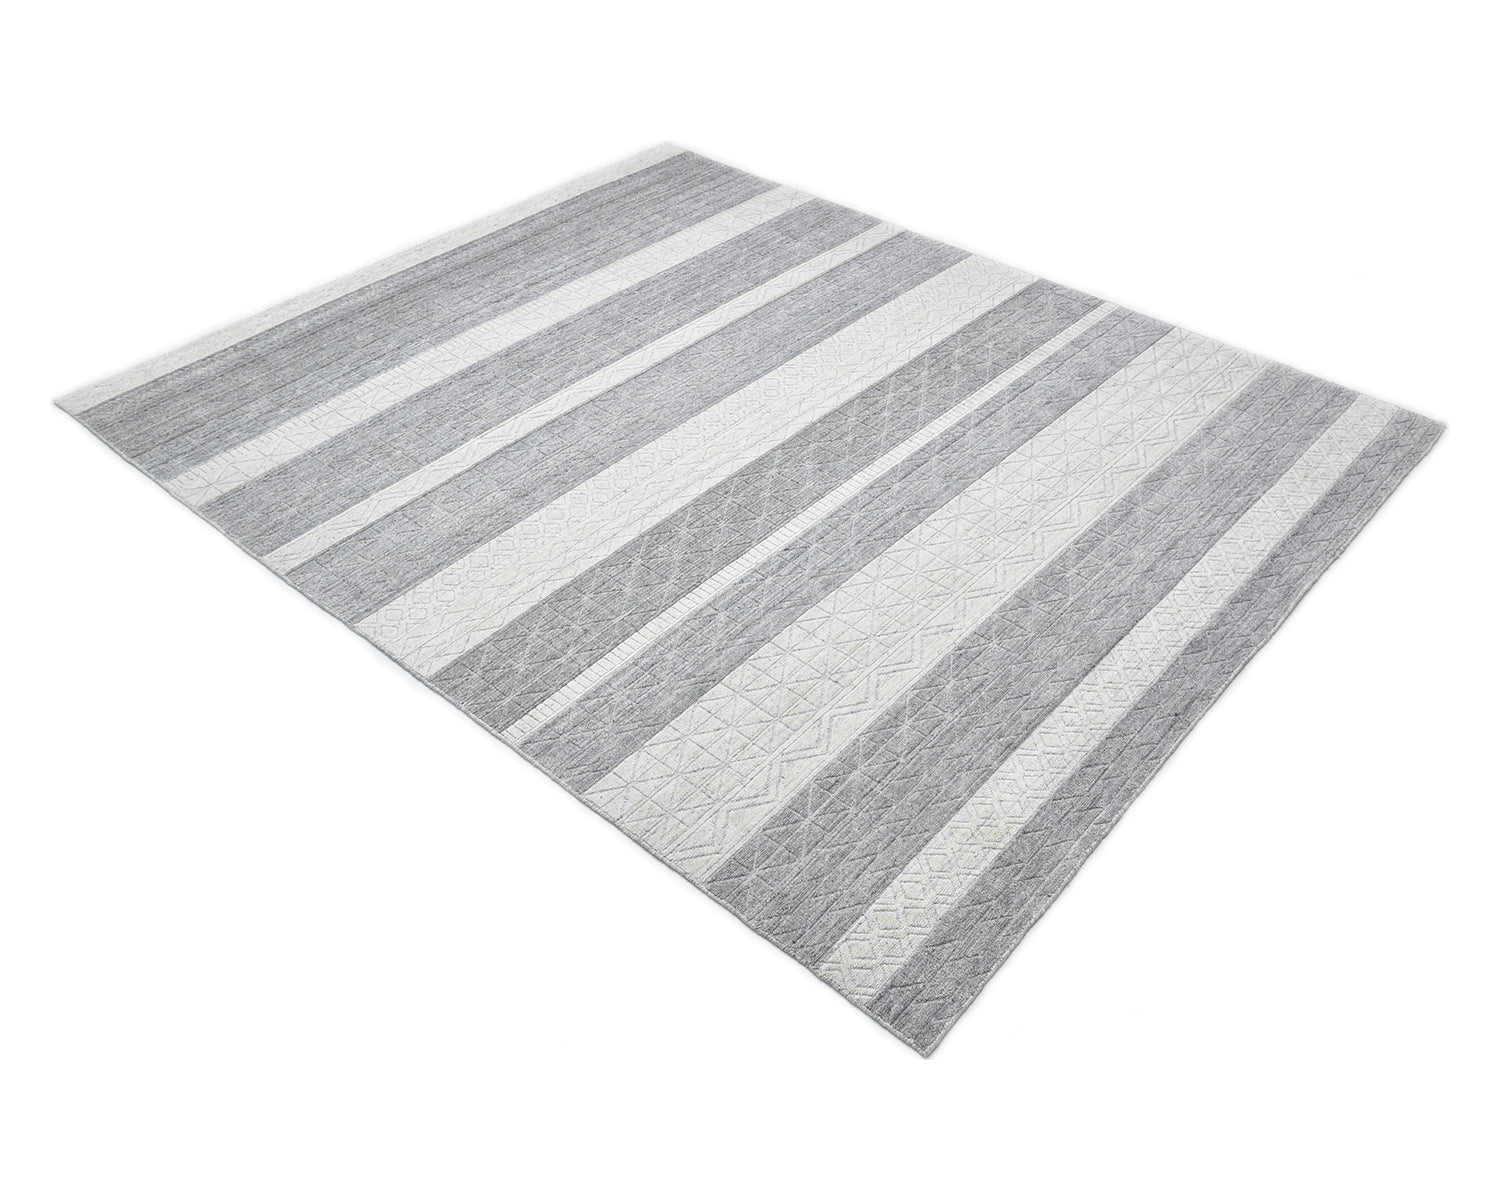 Pari Handmade Contemporary Striped Gray Area Rug